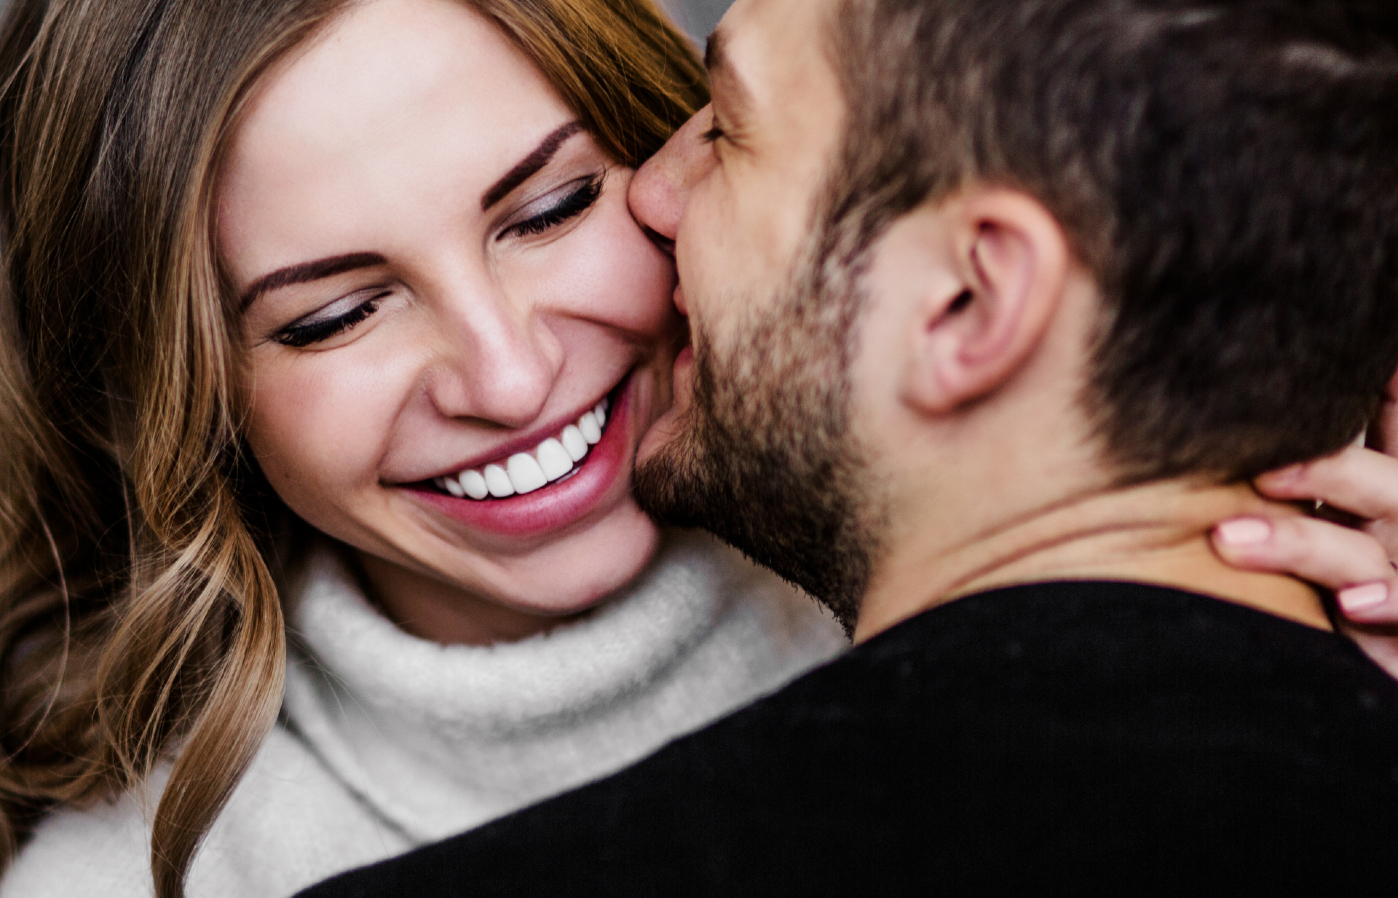 Οι πέντε «γλώσσες της αγάπης»: Το μυστικό για μια επιτυχημένη σχέση